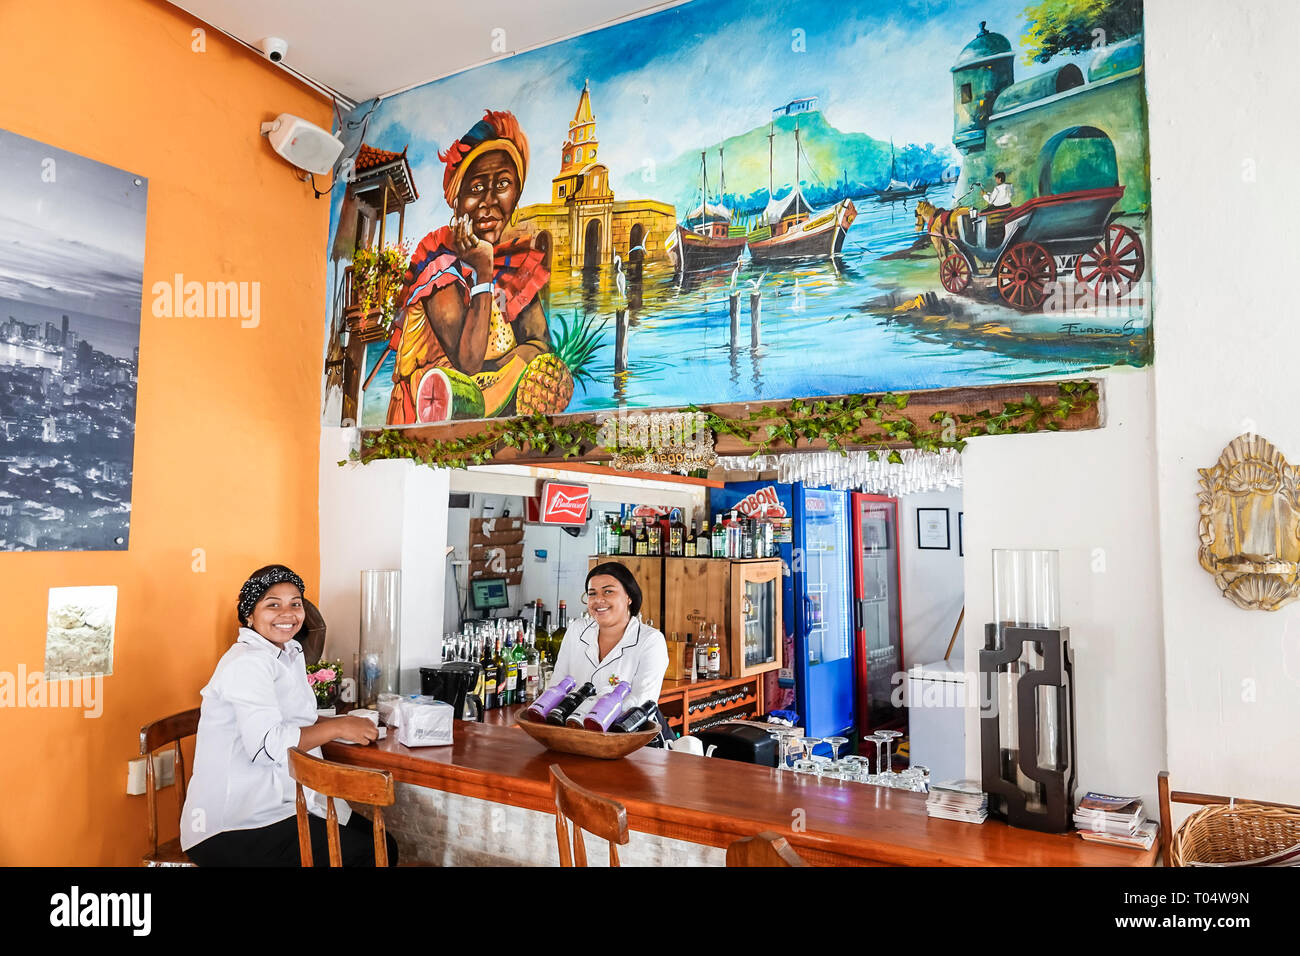 Cartagena Kolumbien,Zentrum,San Diego,Einwohner von Hispanic-Ethnien,La Cocina de Cartagena,Restaurant Restaurants Essen Essen Essen Café,innen Stockfoto